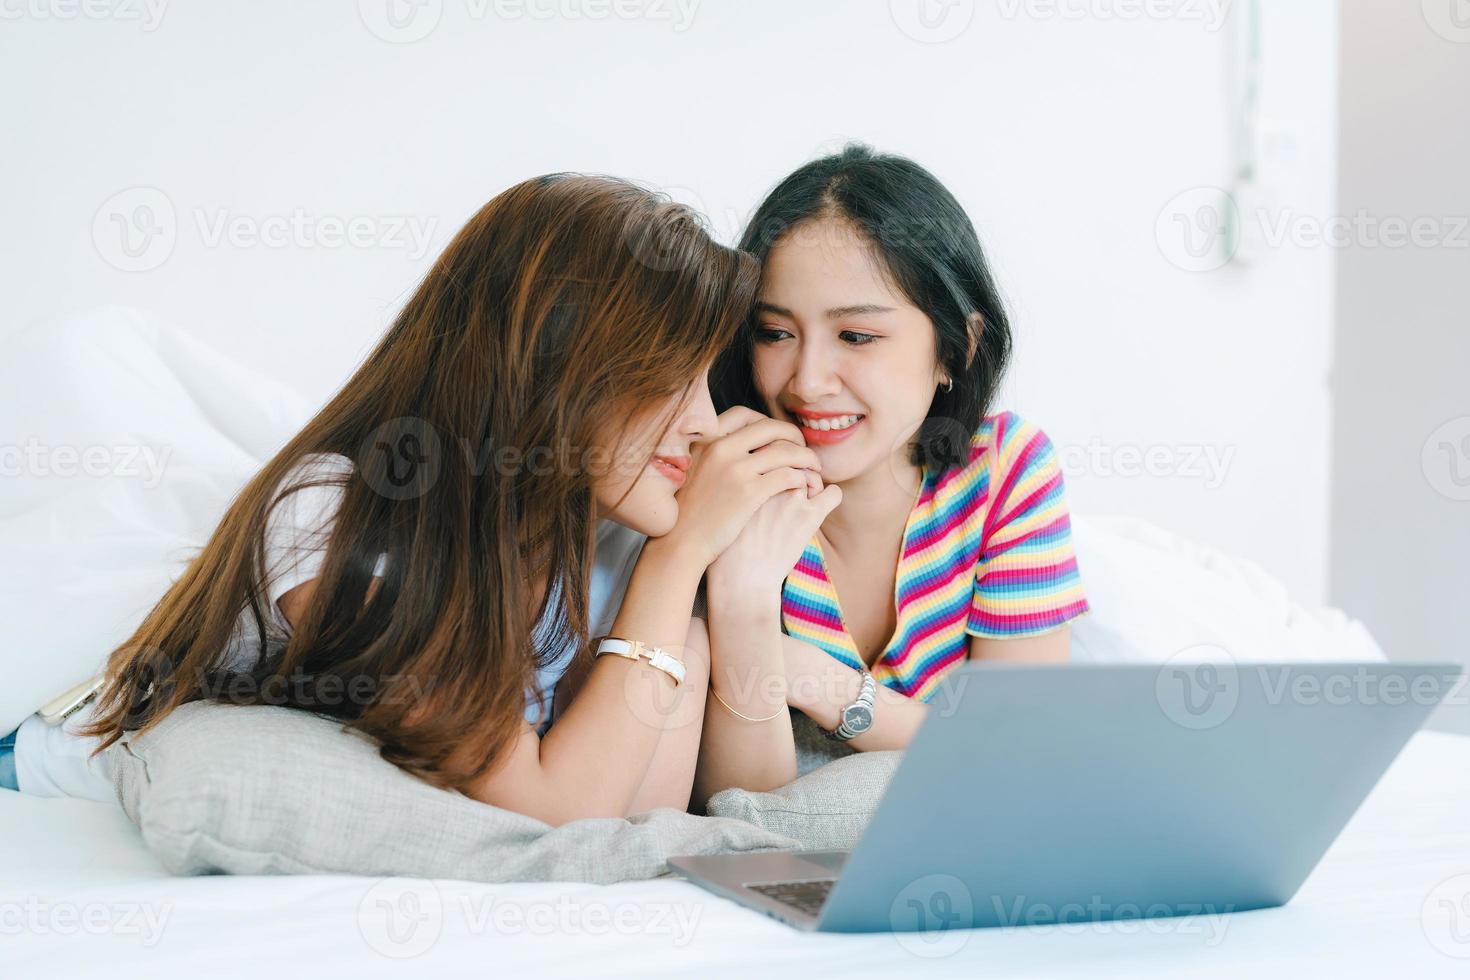 lgbtq, lgbt-konzept, homosexualität, porträt von zwei asiatischen frauen, die glücklich zusammen posieren und sich lieben, während sie computer-laptop auf dem bett spielen foto